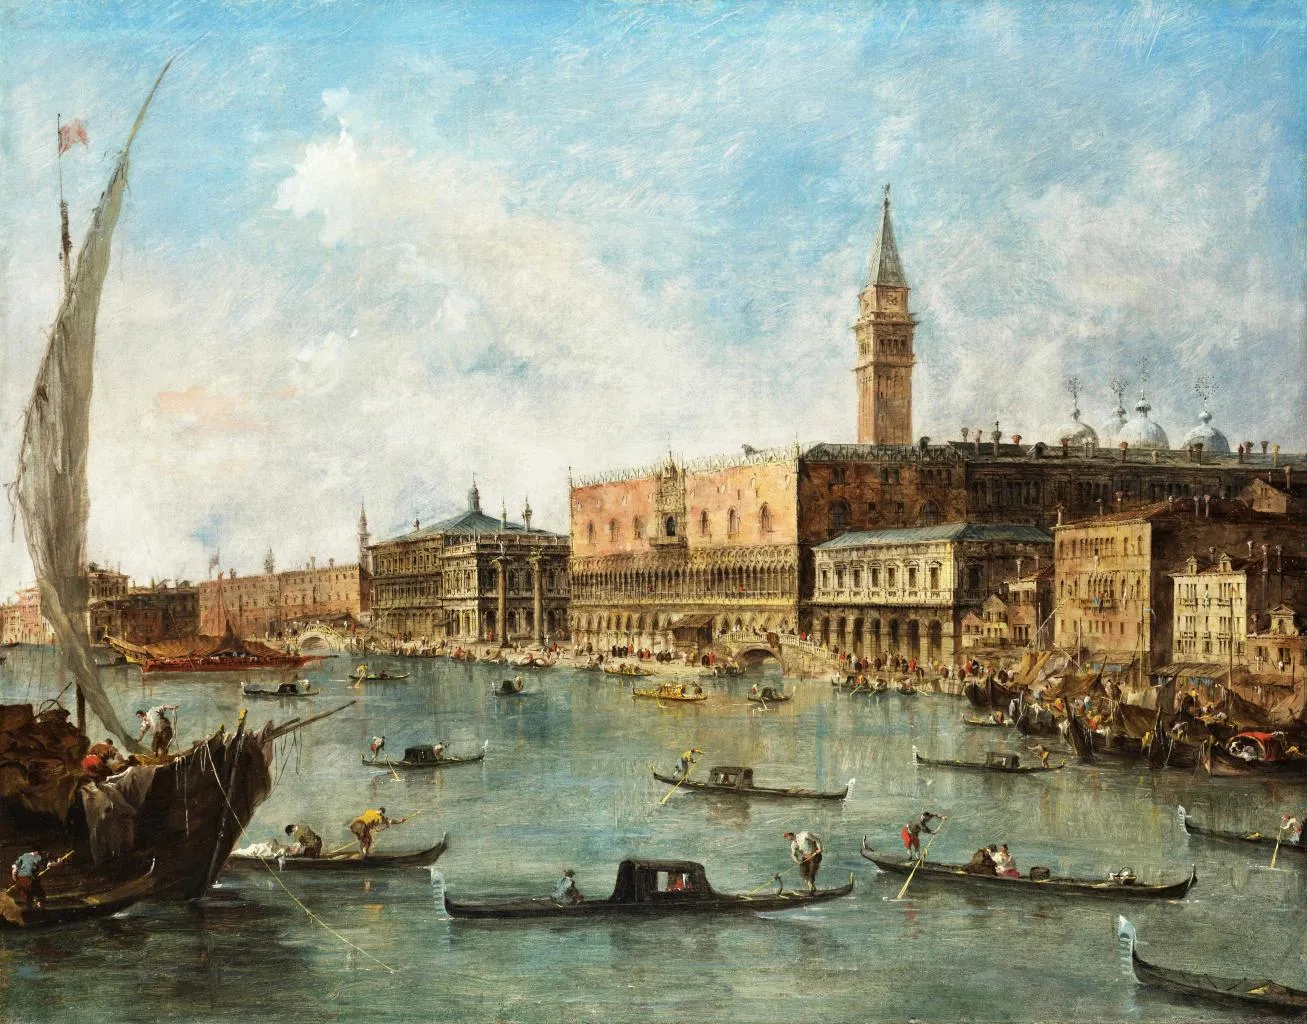 Procession of Gondolas in the Bacino di San Marco, Venice